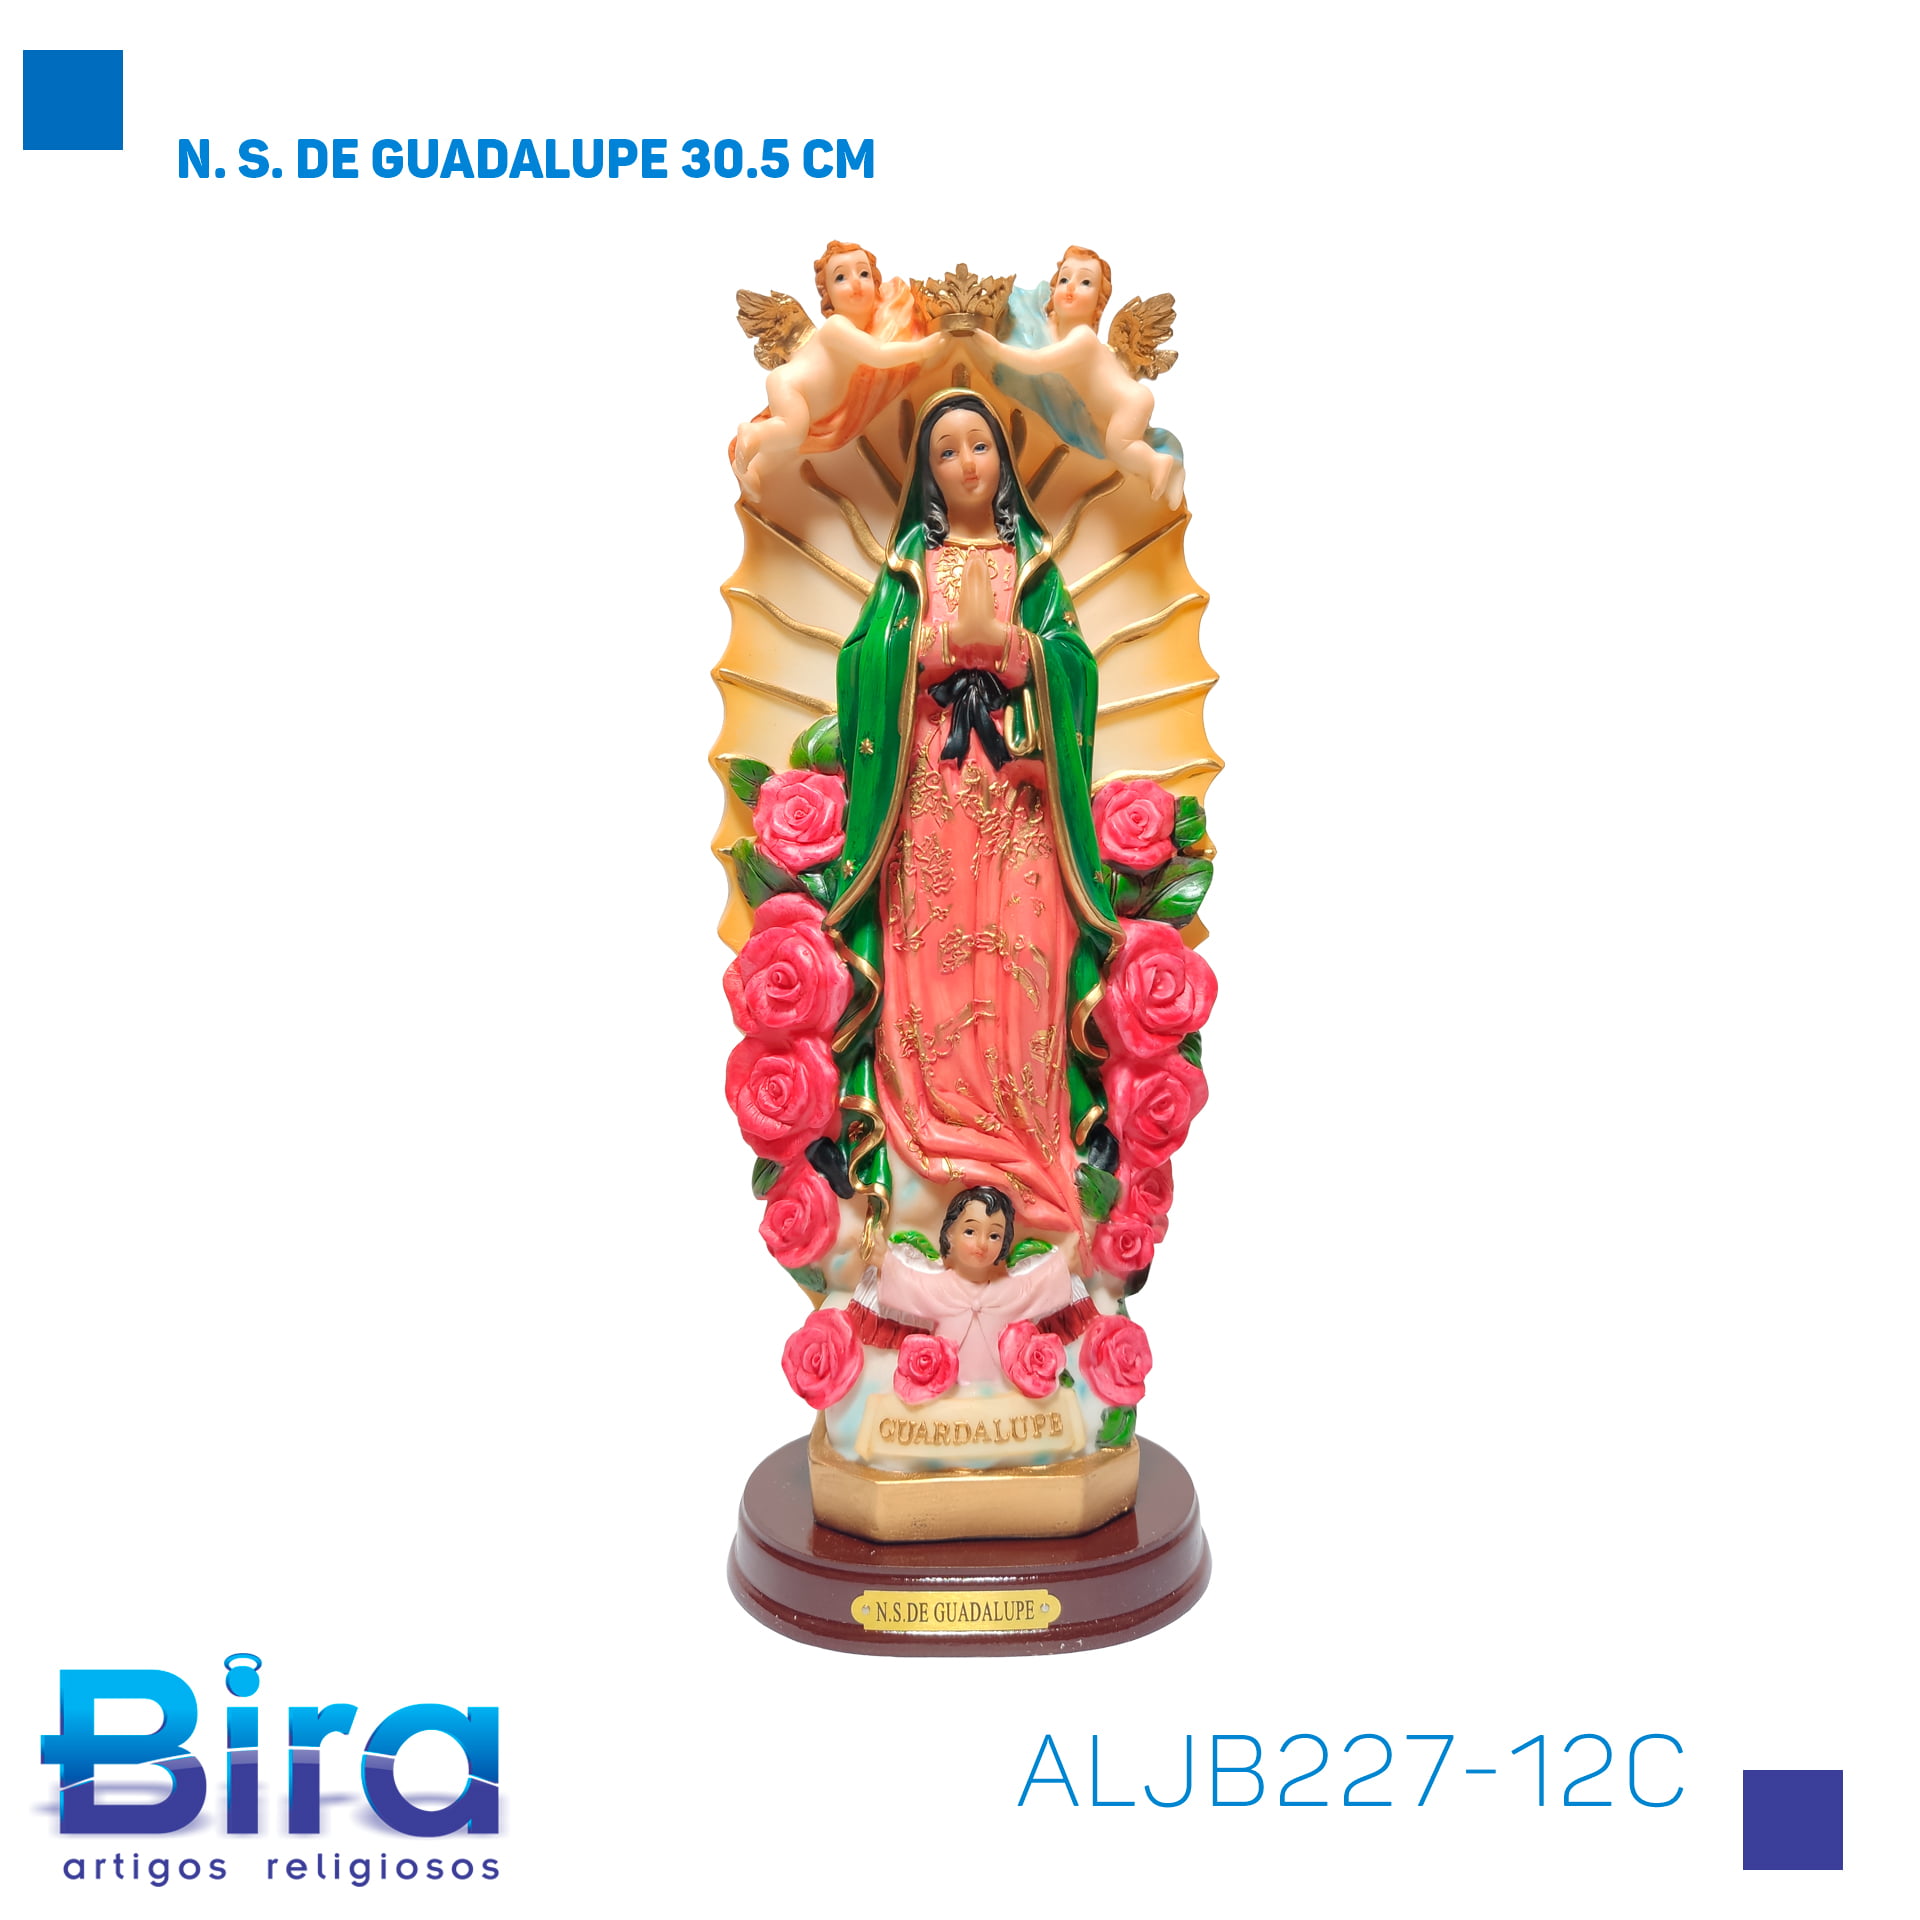 Bira Artigos Religiosos - N. S. DE GUADALUPE 30.5 CM - Cod. ALJB227-12C